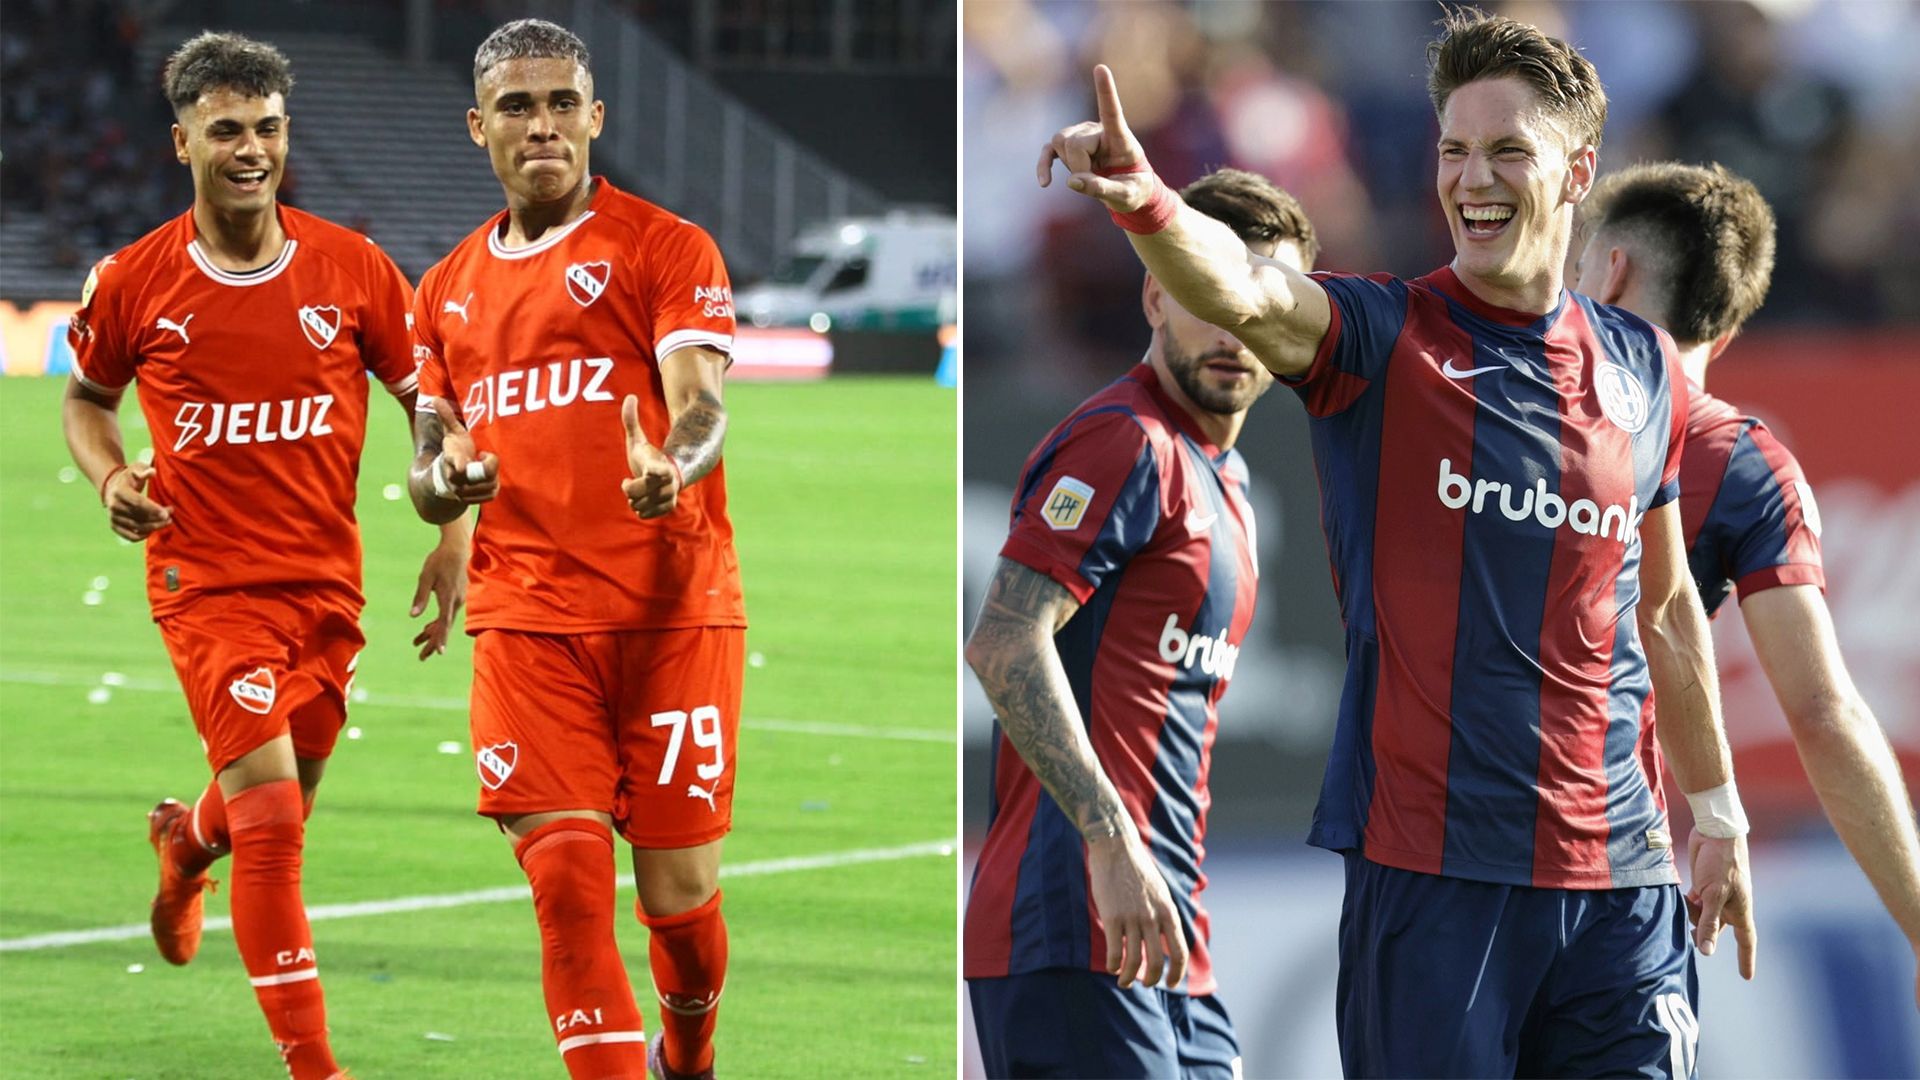 Liga Profesional: Independiente venció a Talleres y San Lorenzo superó a Arsenal